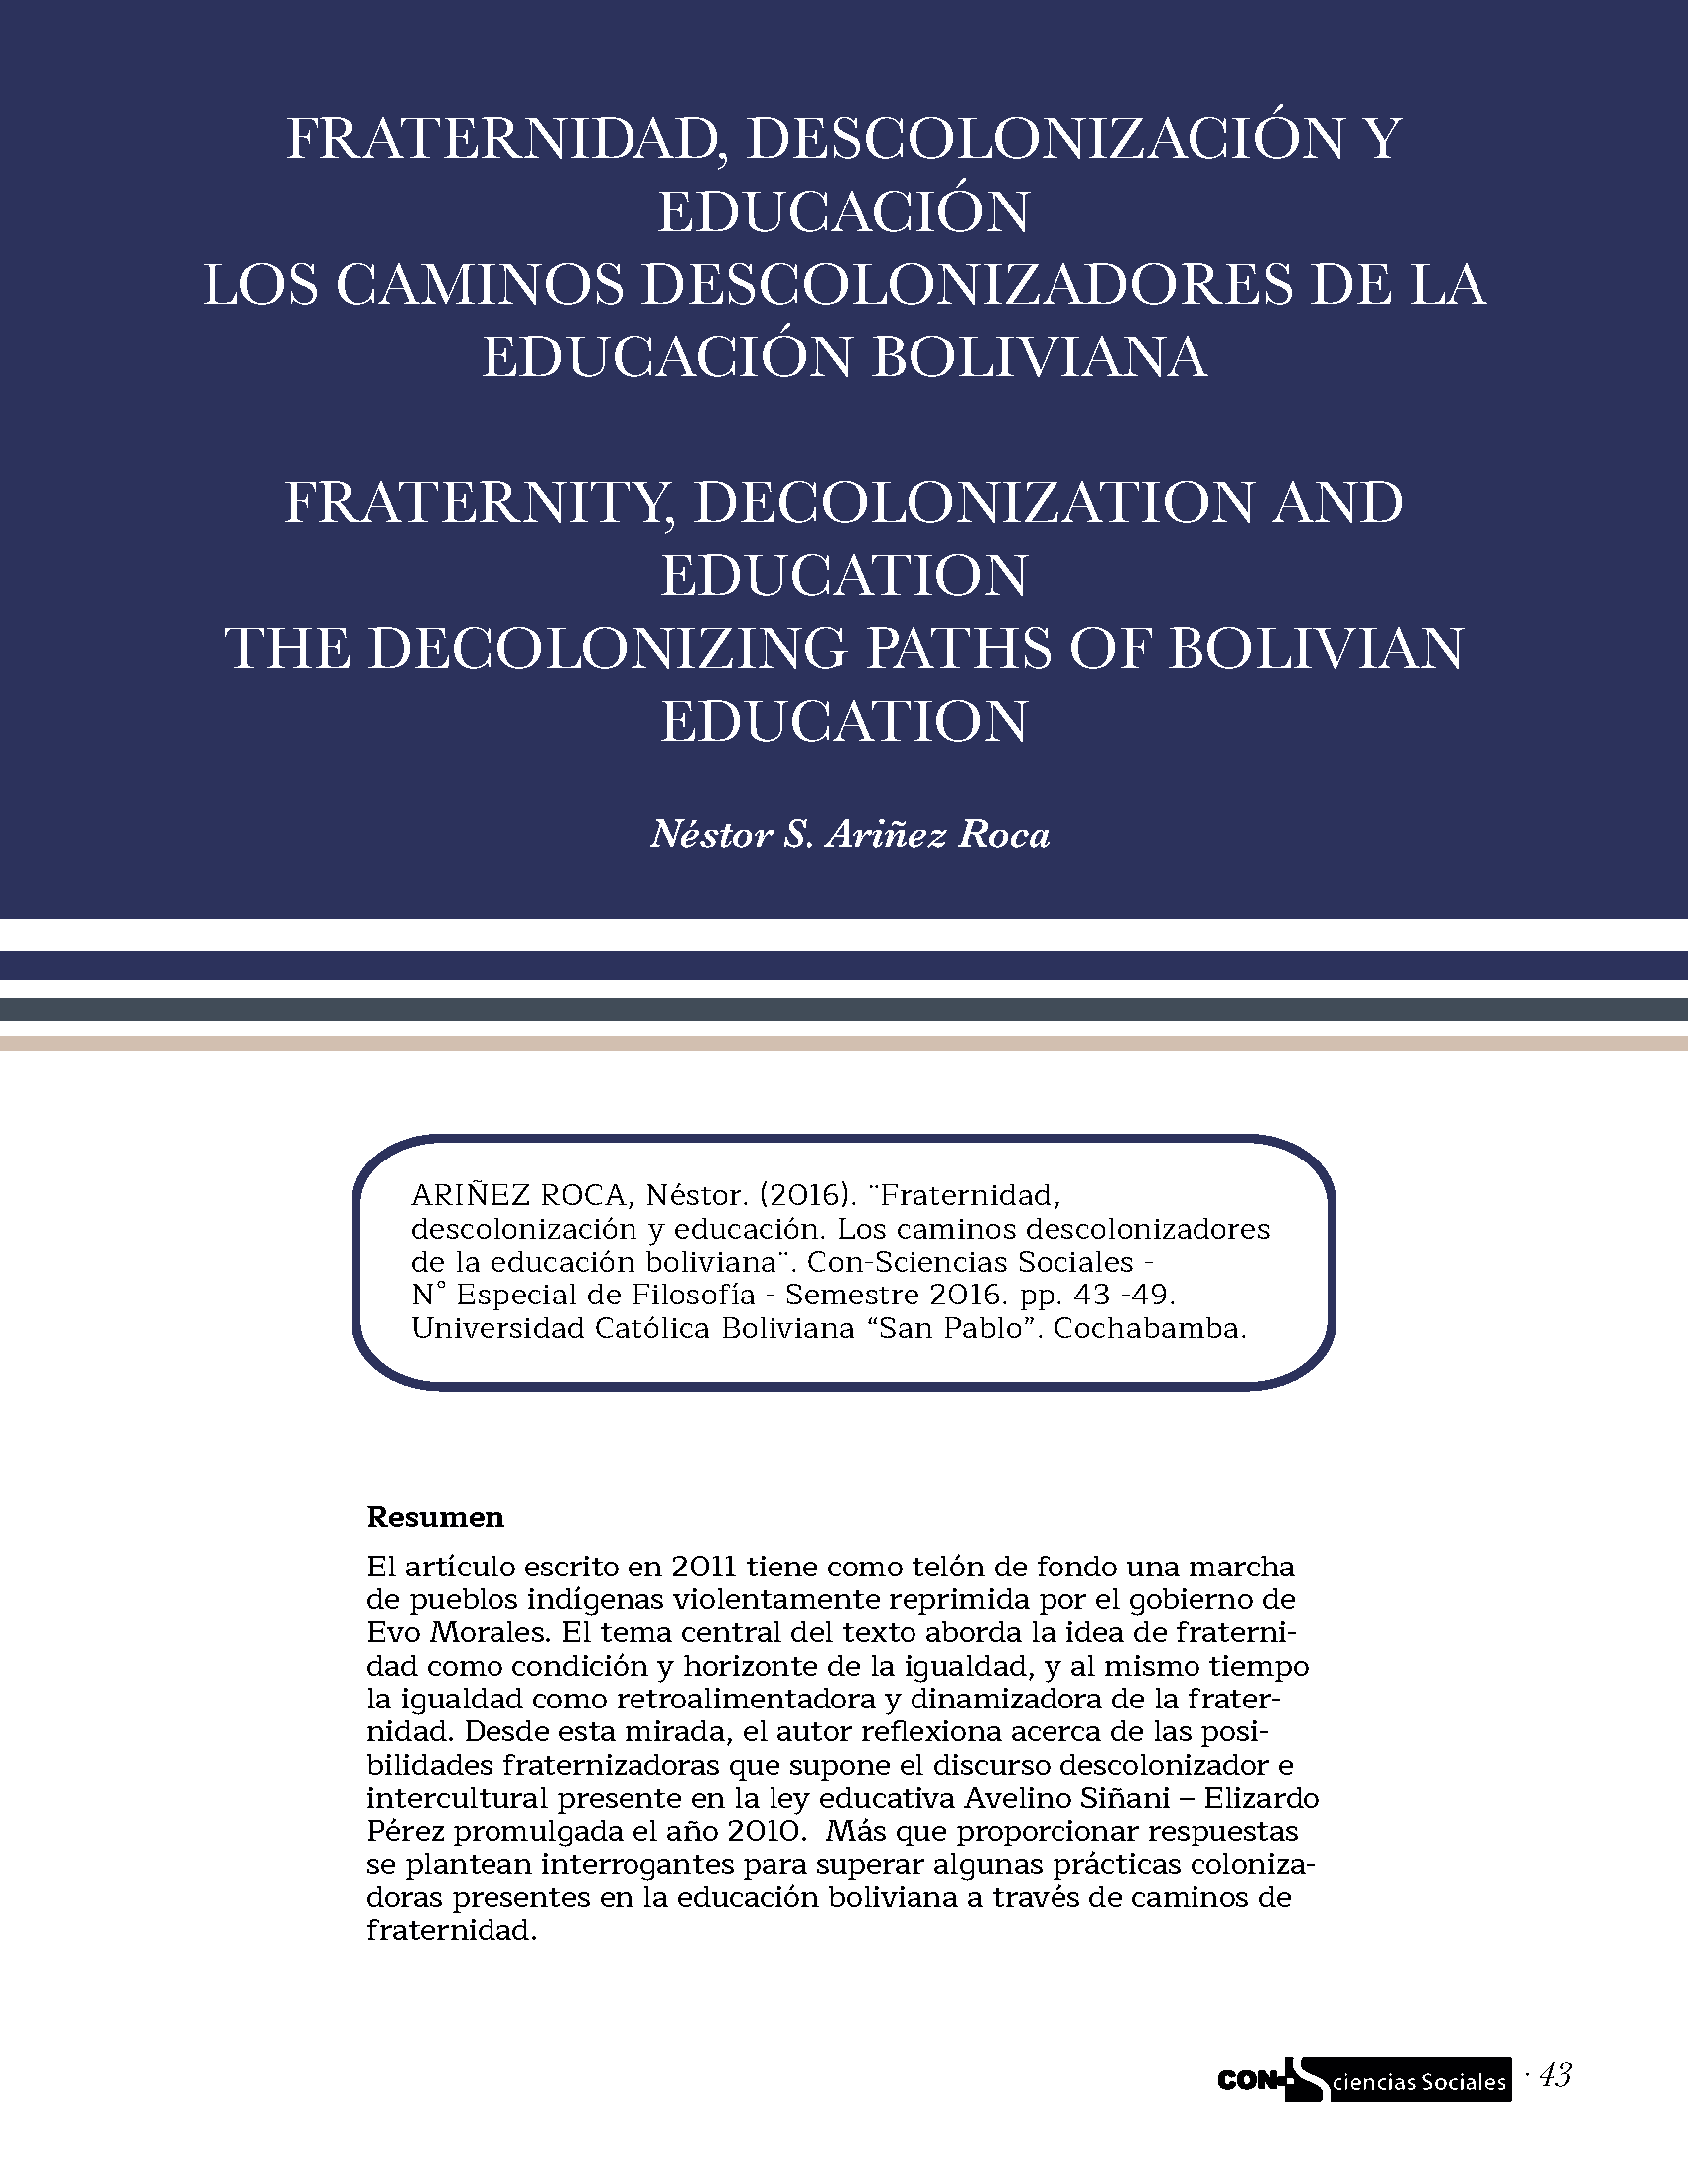 Fraternidad, descolonización y educación los caminos descolonizadores de la educación boliviana